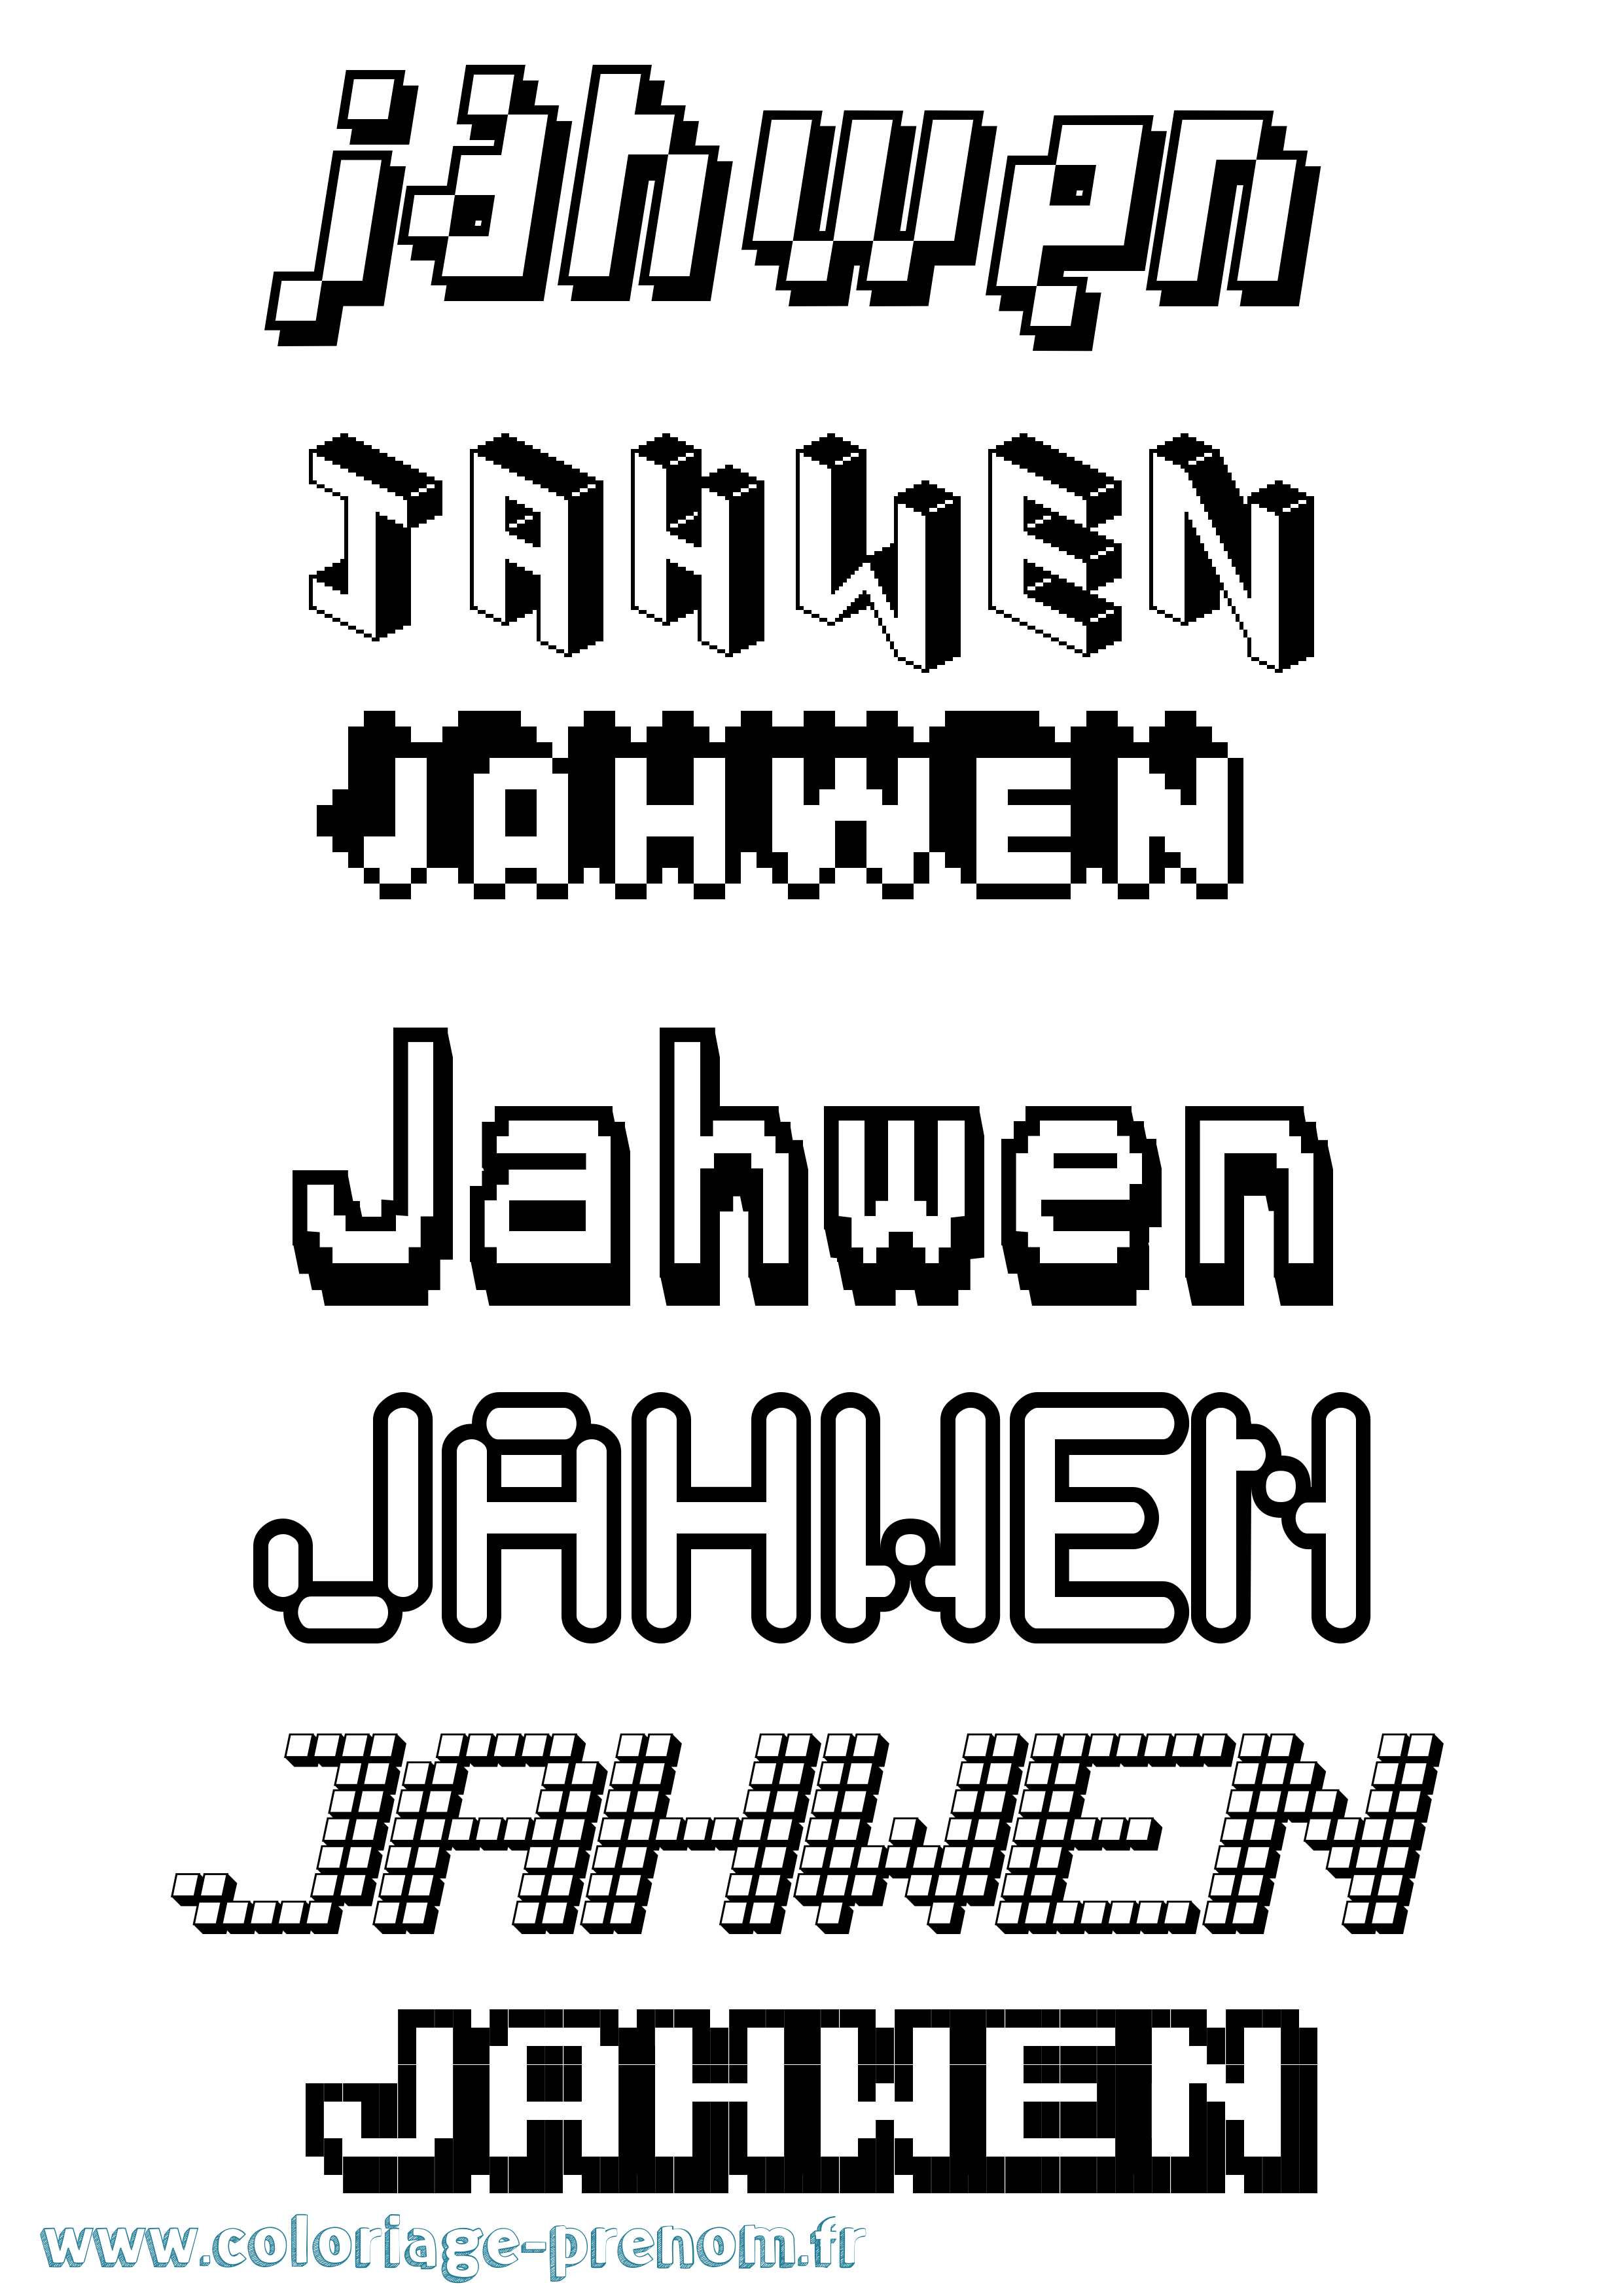 Coloriage prénom Jahwen Pixel